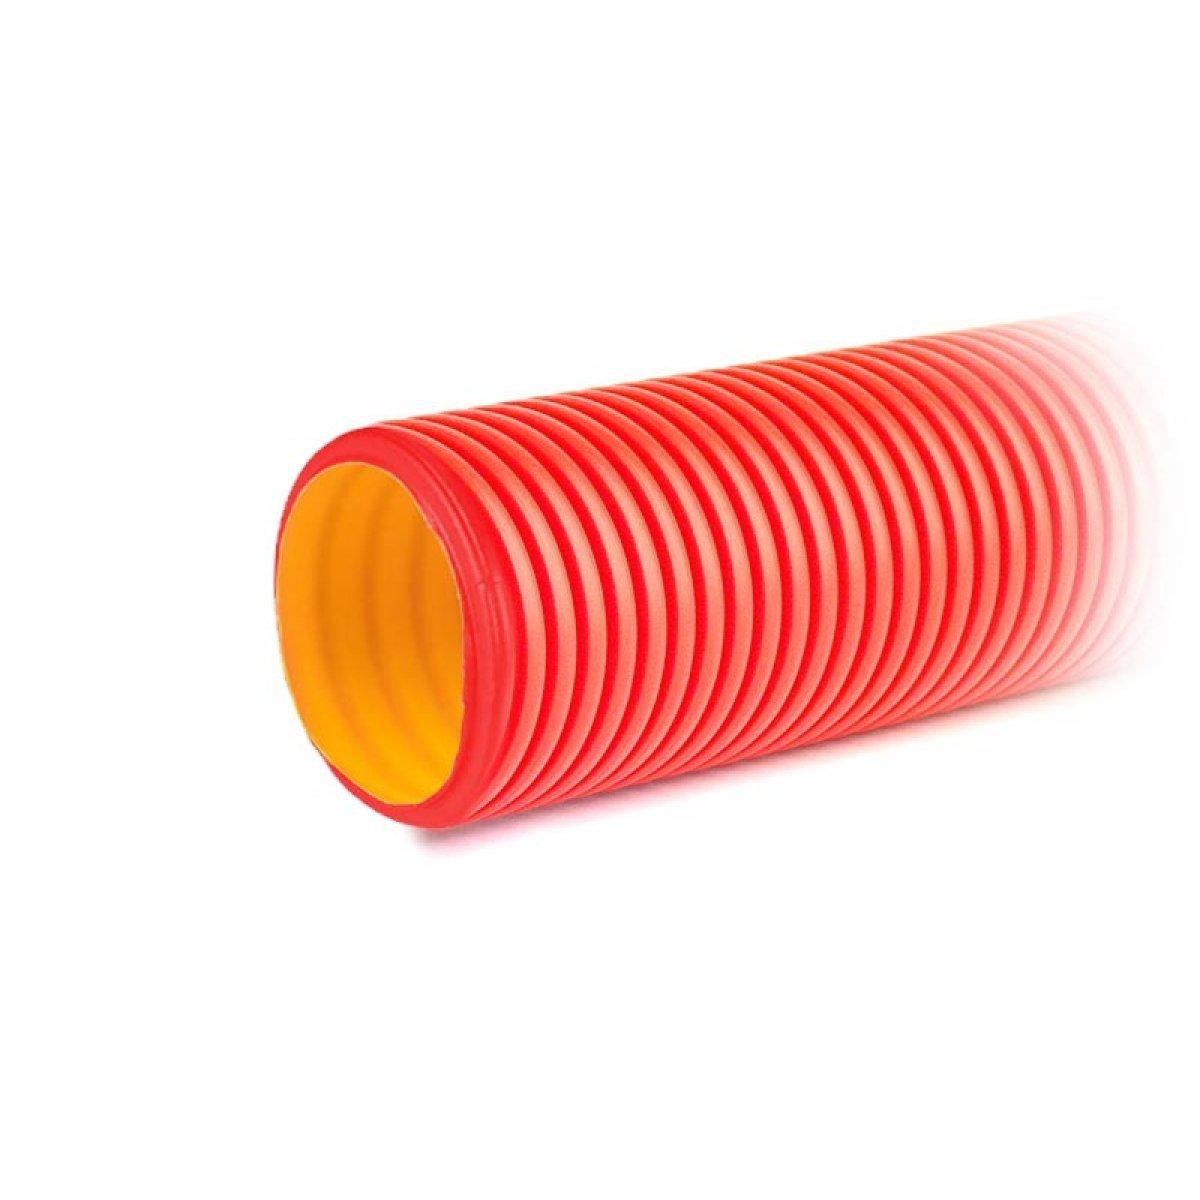 Двустенная труба ПНД гибкая для кабельной канализации д.50мм с протяжкой, SN13, в бухте 100м, цвет красный.